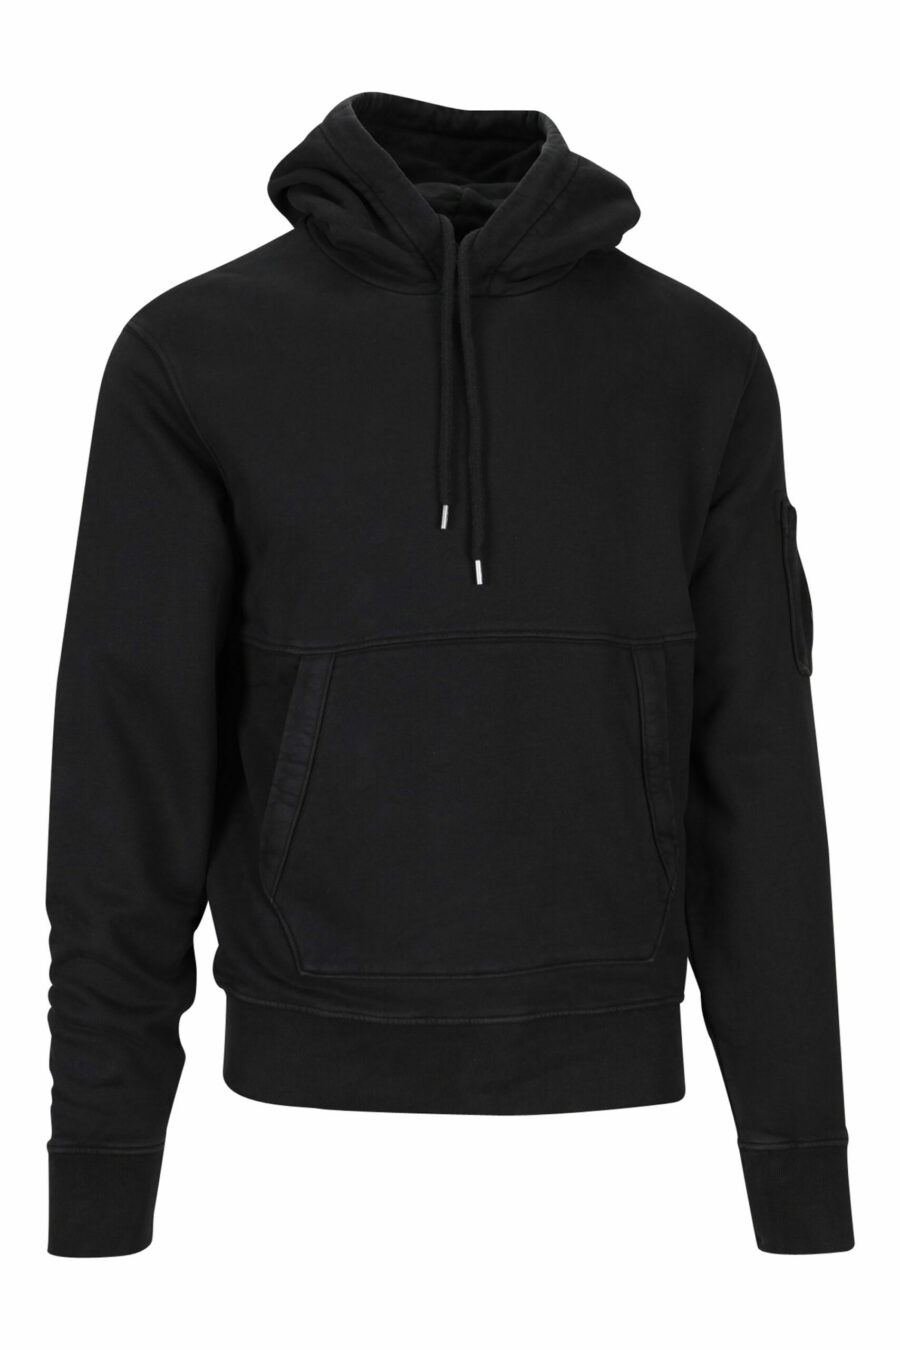 Schwarzes Kapuzensweatshirt mit seitlicher Logolinse - 7620943599336 skaliert